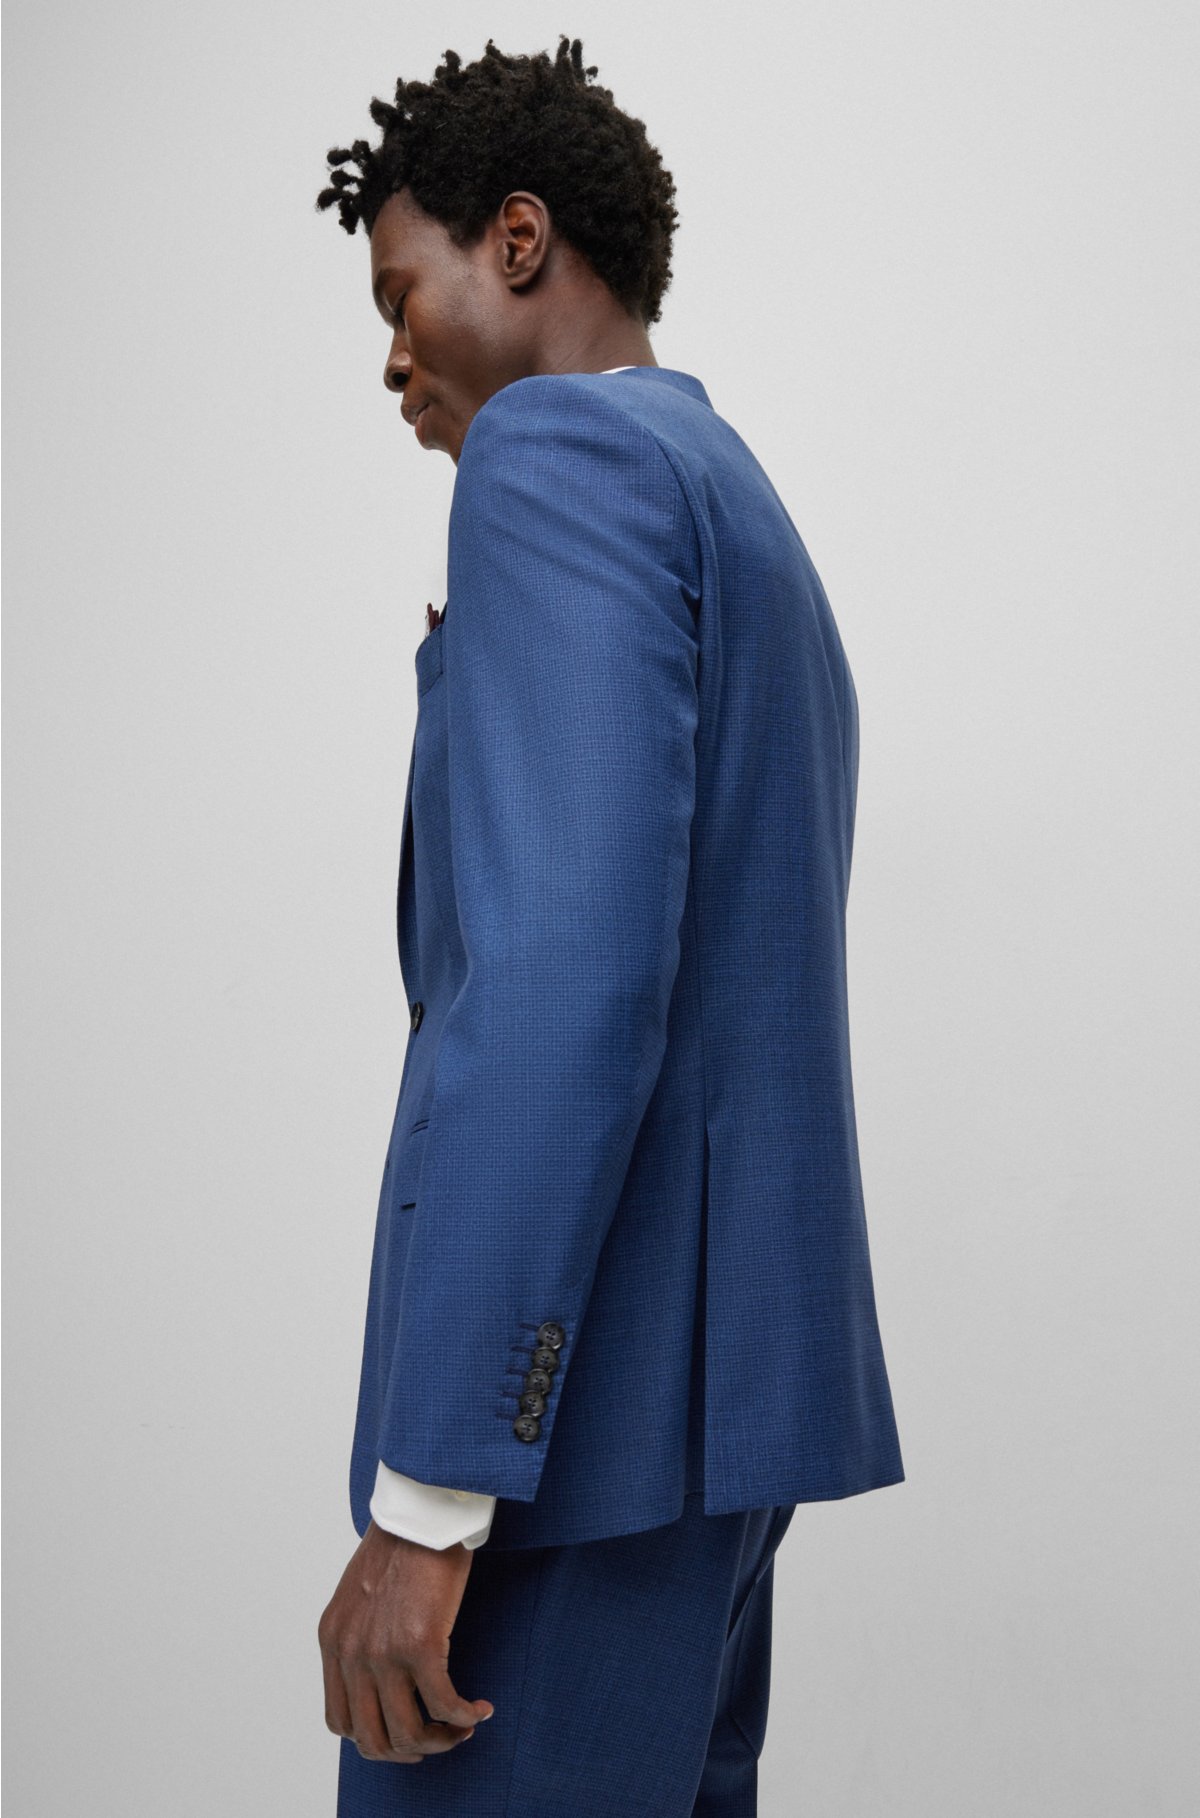 Slim fit suit blazer in 100% wool · Navy Blue · Dressy